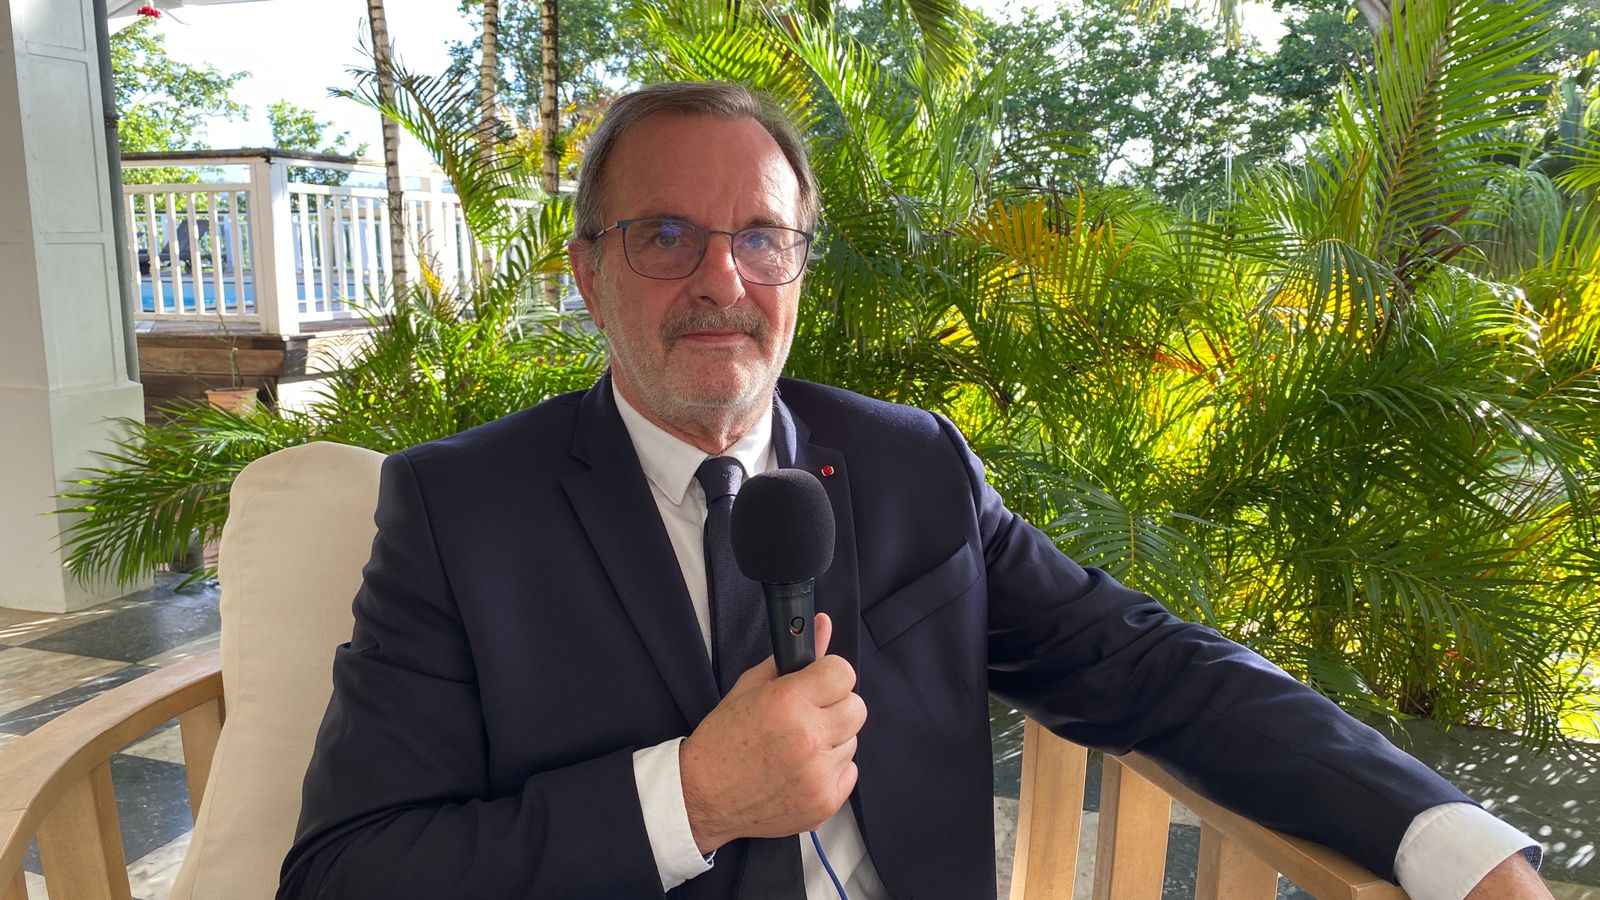     Jean-François Carenco en Martinique sur fond de polémique autour du Grand Port Maritime

